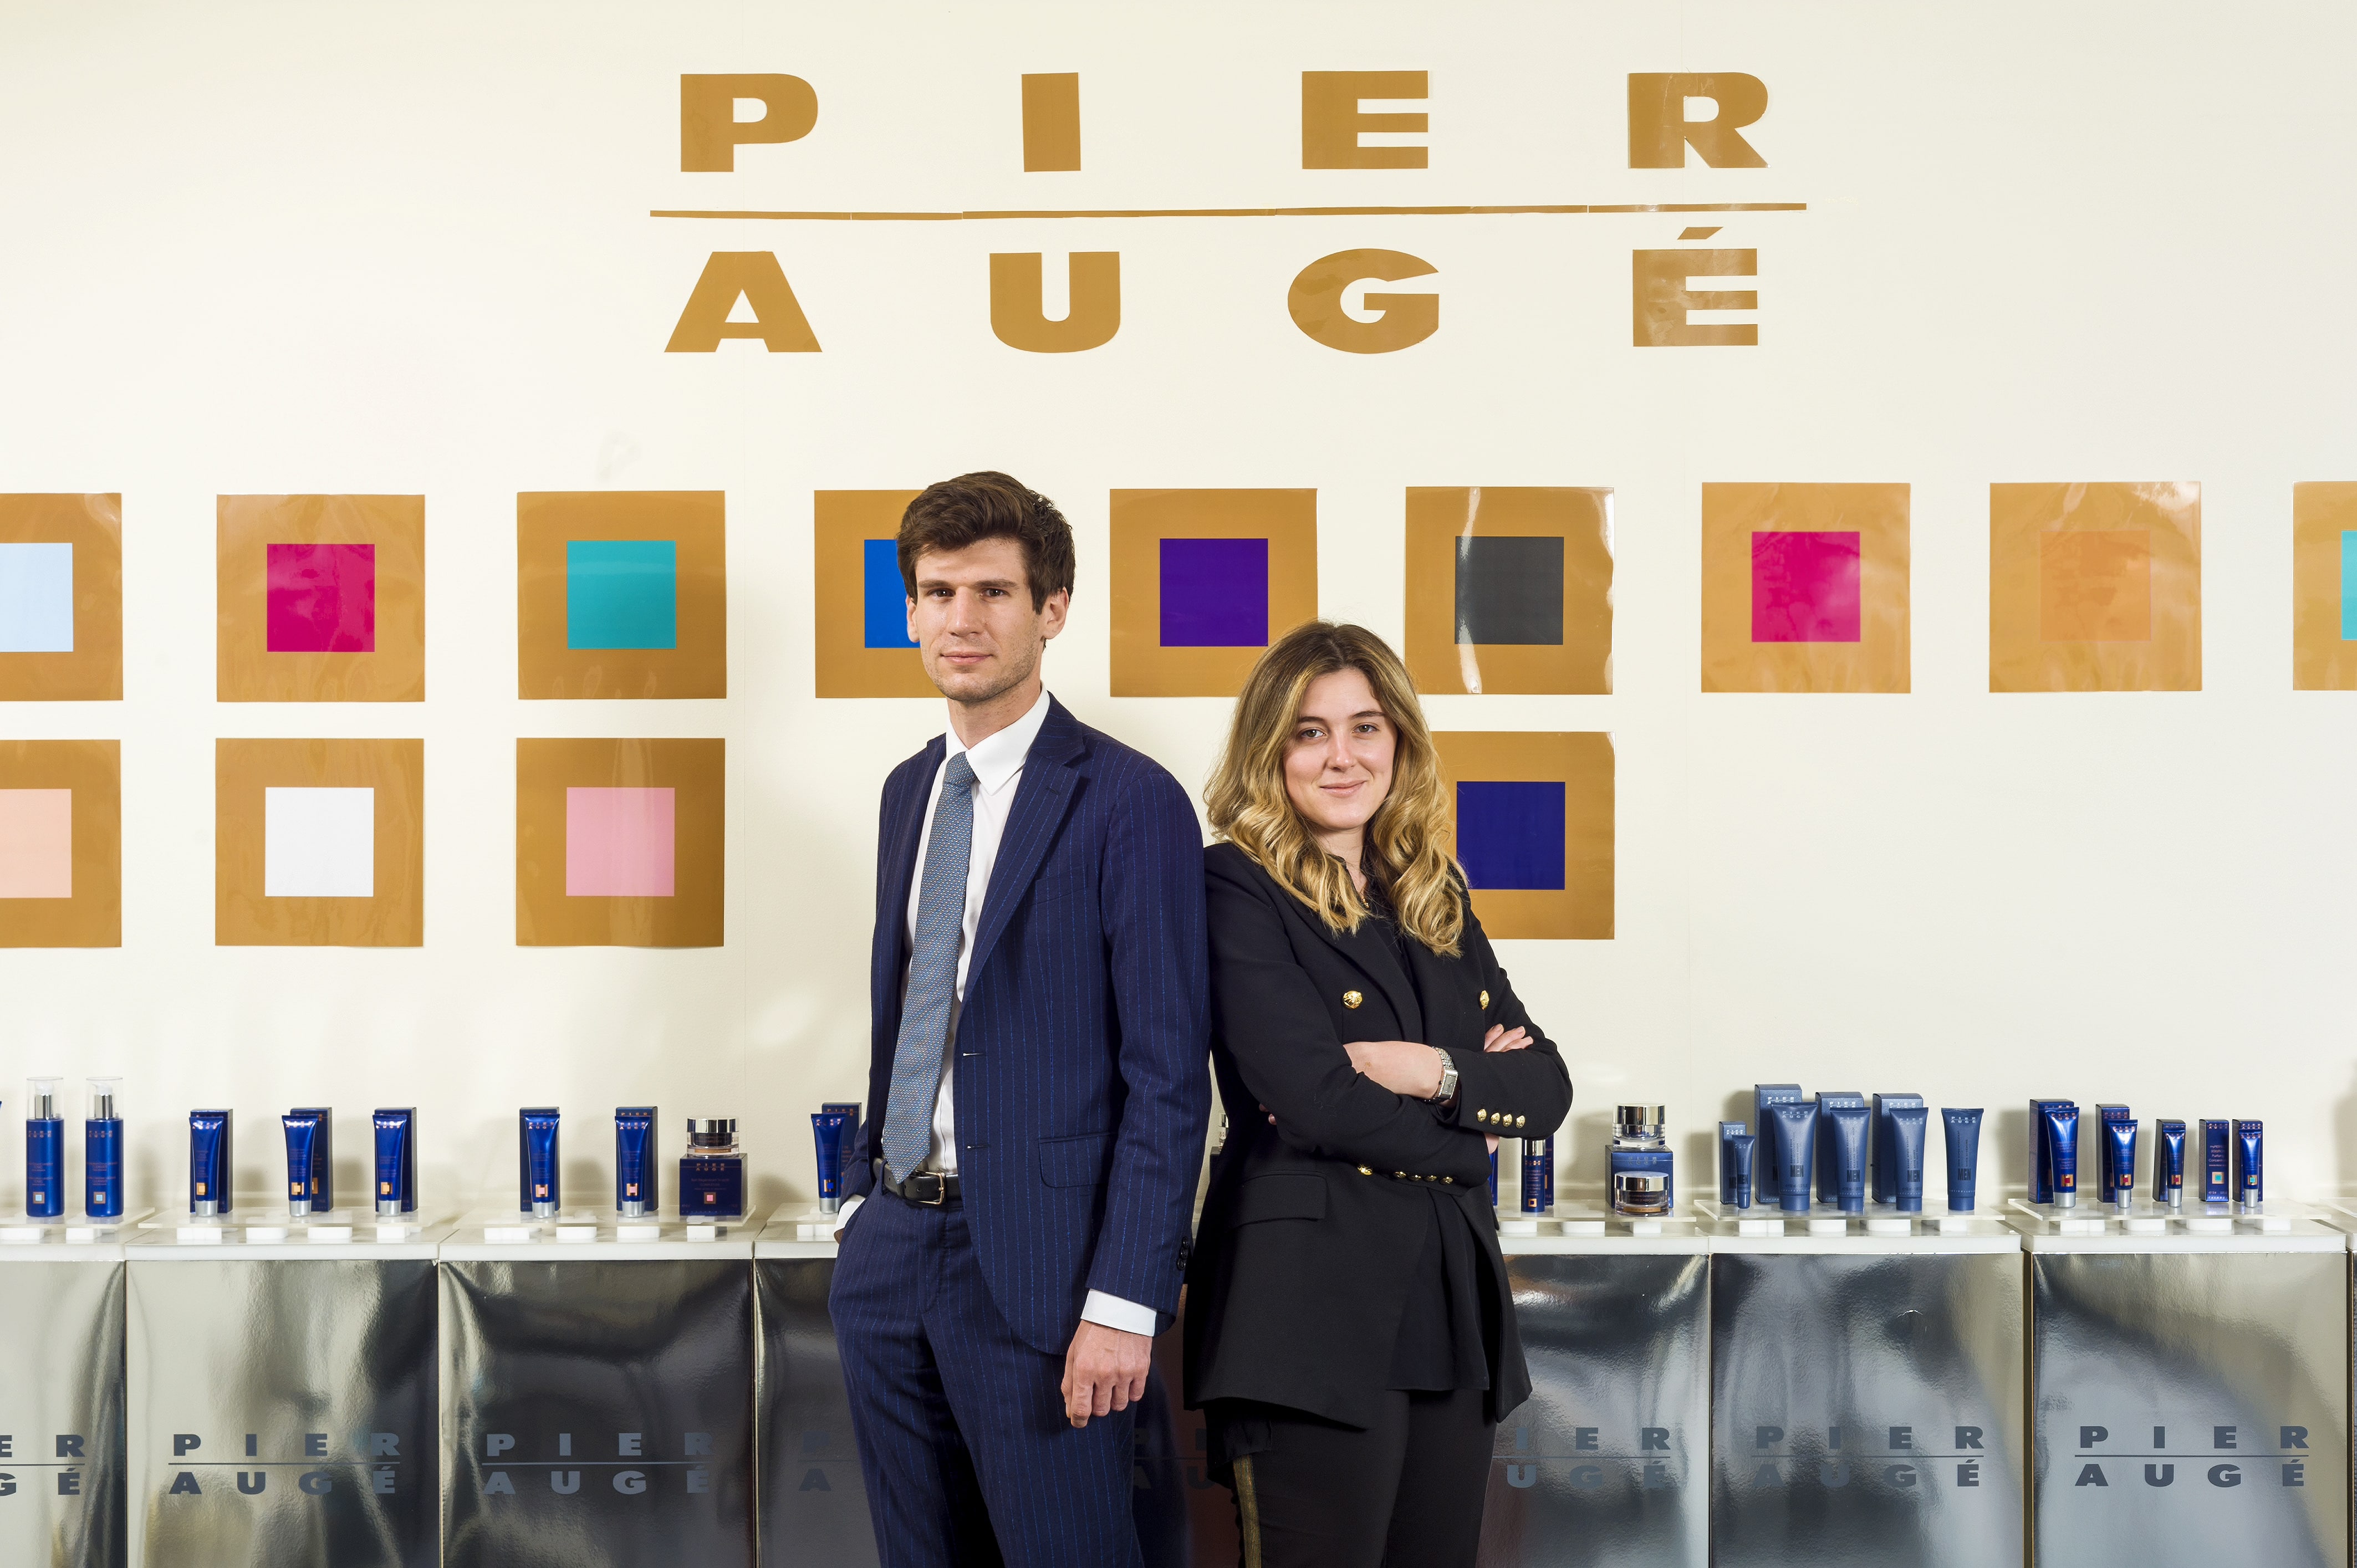 Soixante ans après sa création, la marque de cosmétiques Pier Augé veut renaître